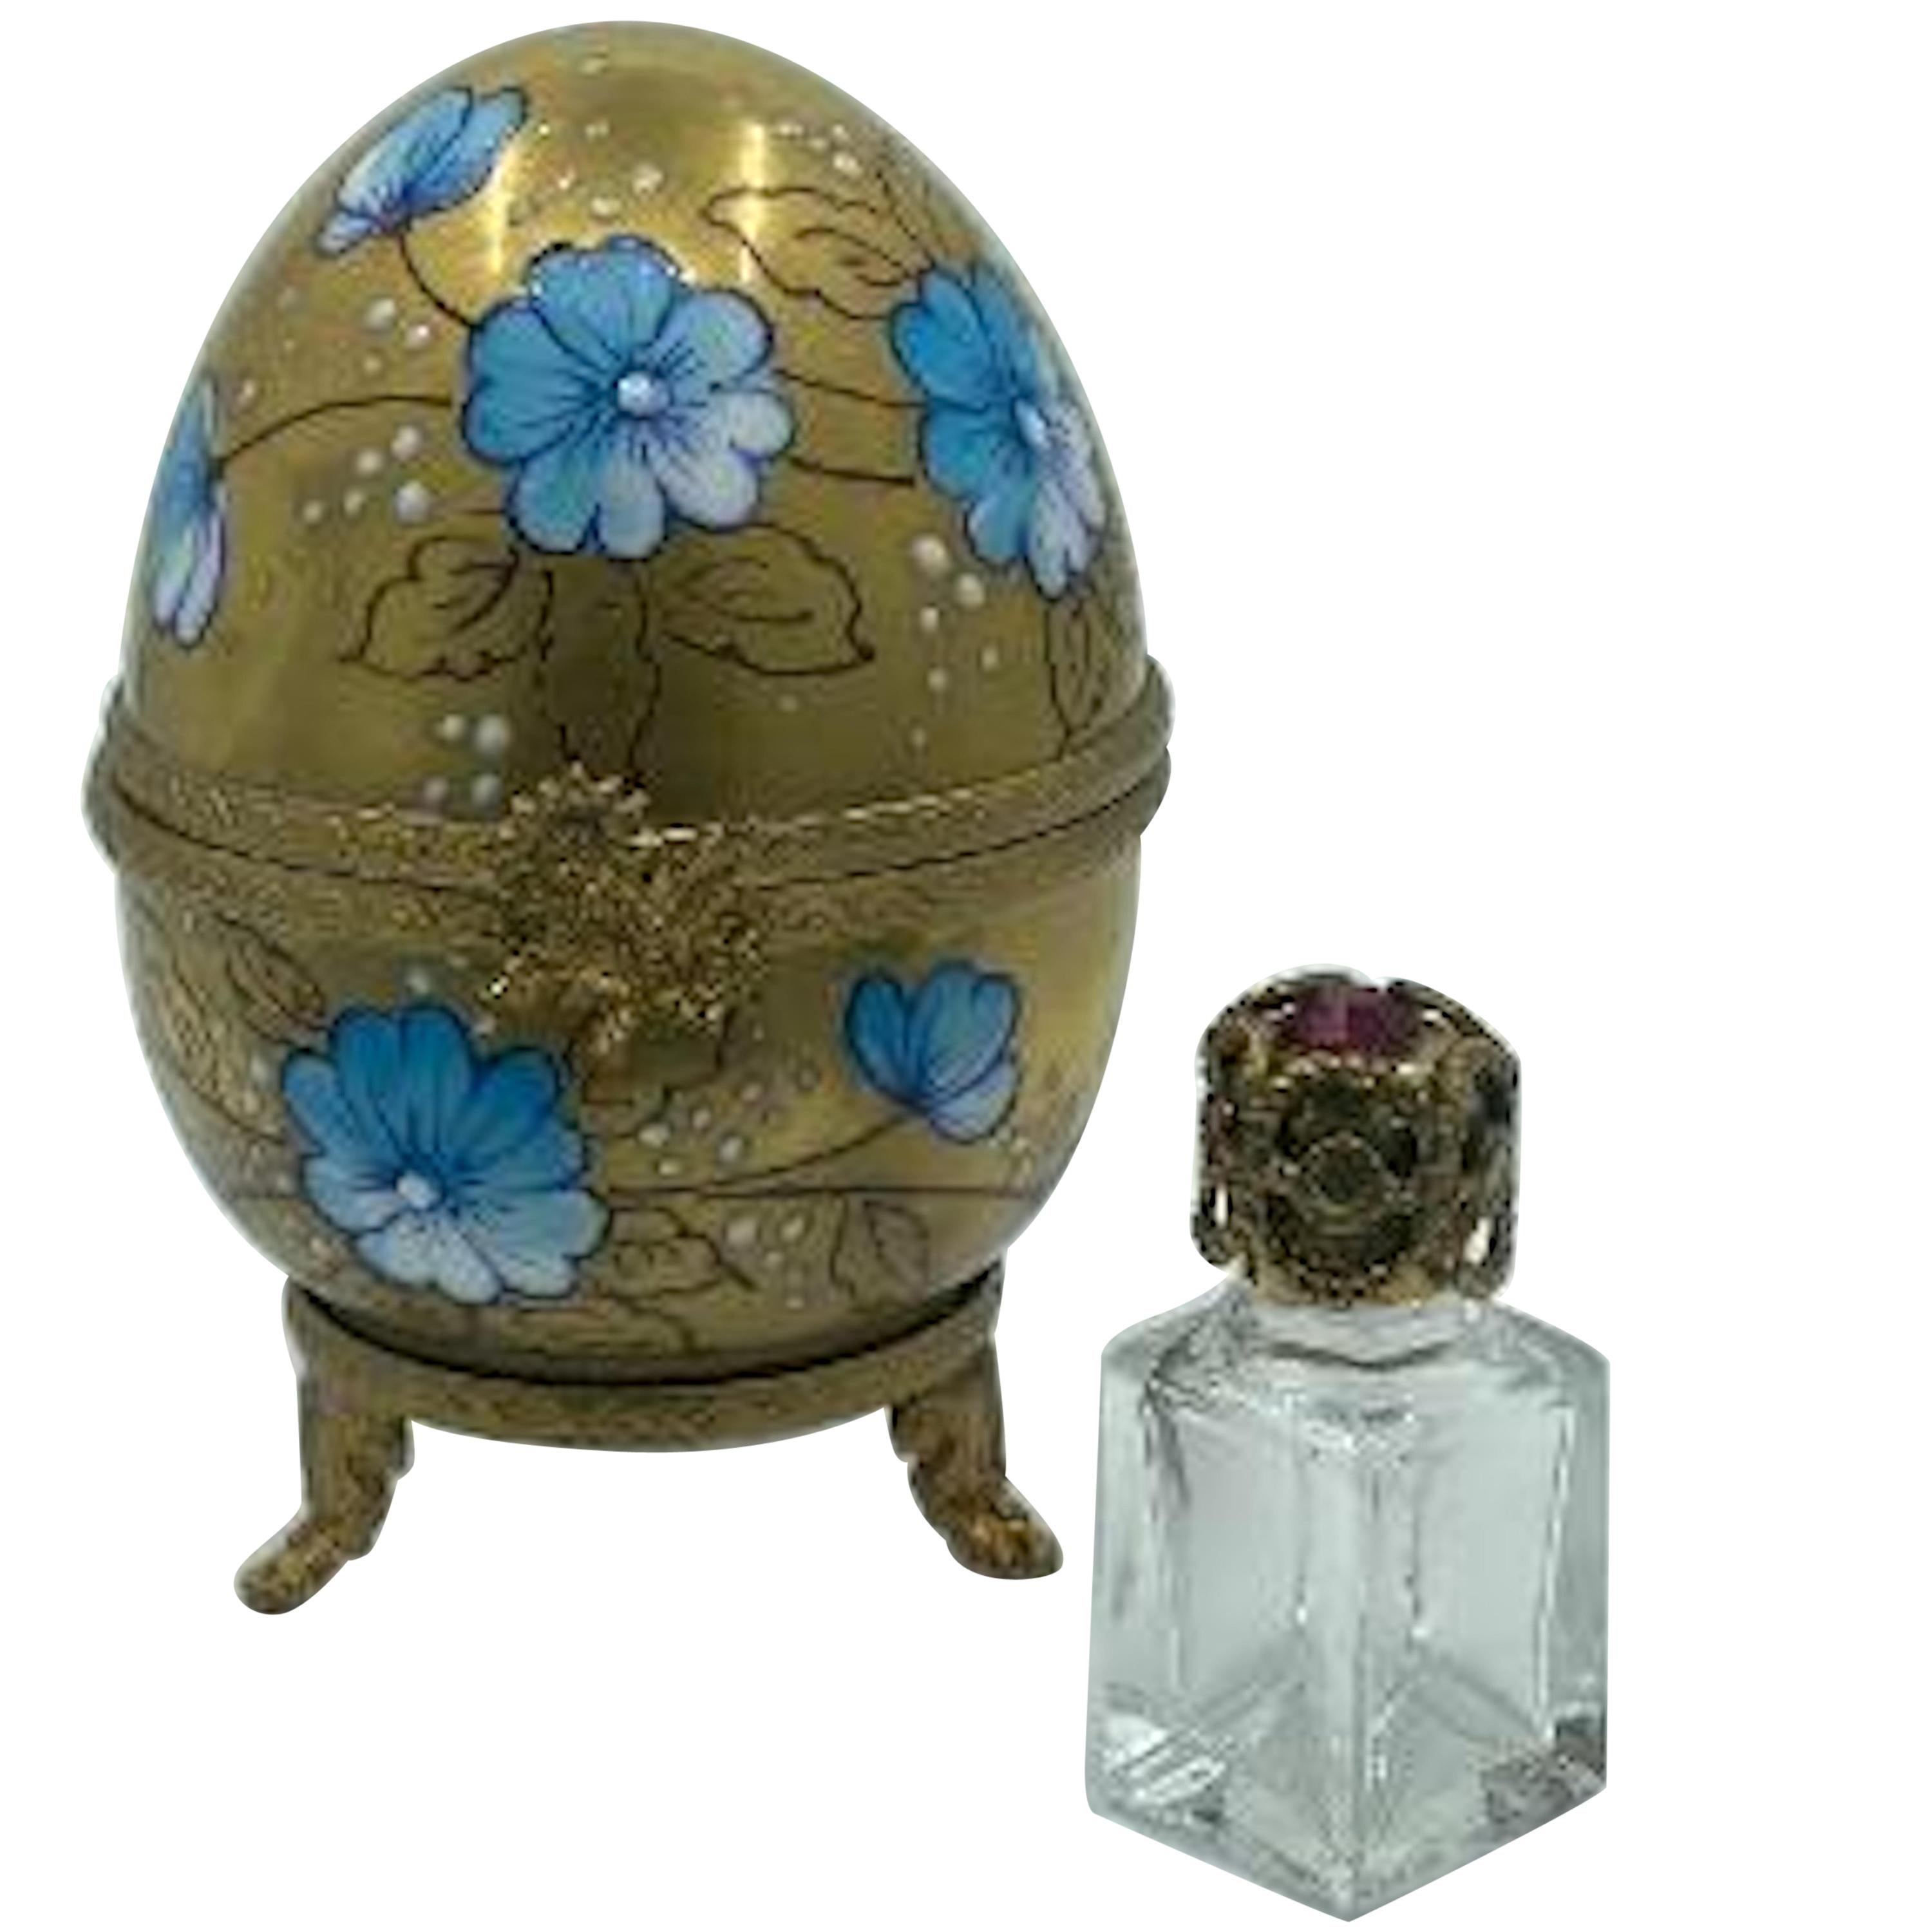 Exquisite Limoges France 24-Karat Gold Porcelain Egg with Perfume Bottle Inside